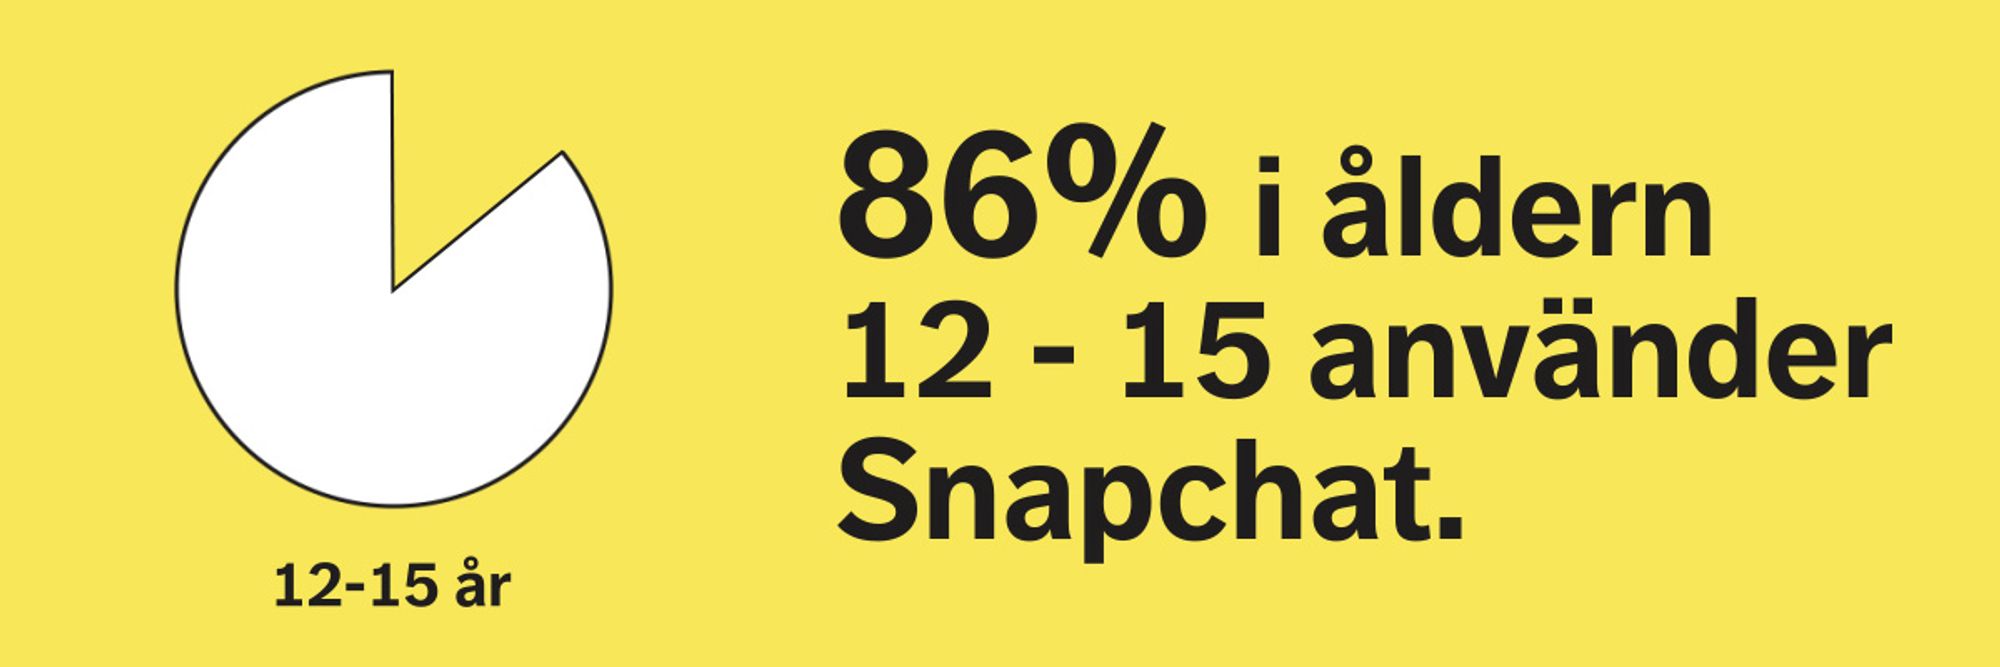 Unga mellan 12 till 15 använder Snapchat